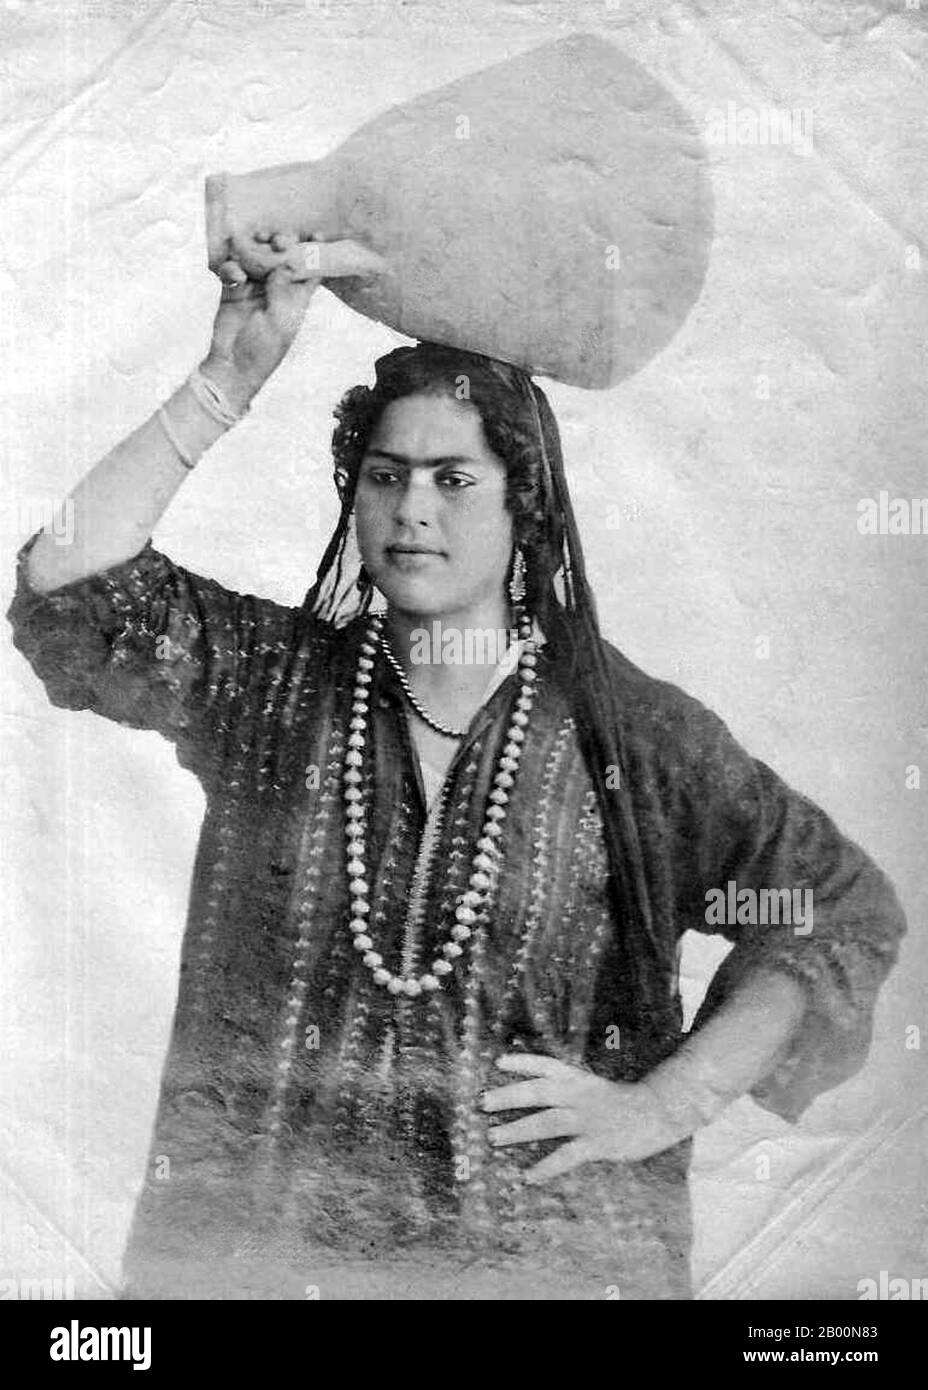 Algerien: Porträt einer Basarianin mit Wassertopf auf dem Kopf. Foto einer arabischen Frau aus Algerien, die einen Wassertopf auf dem Kopf trägt. Hergestellt als Souvenir für den entstehenden europäischen Tourismusmarkt. Stockfoto